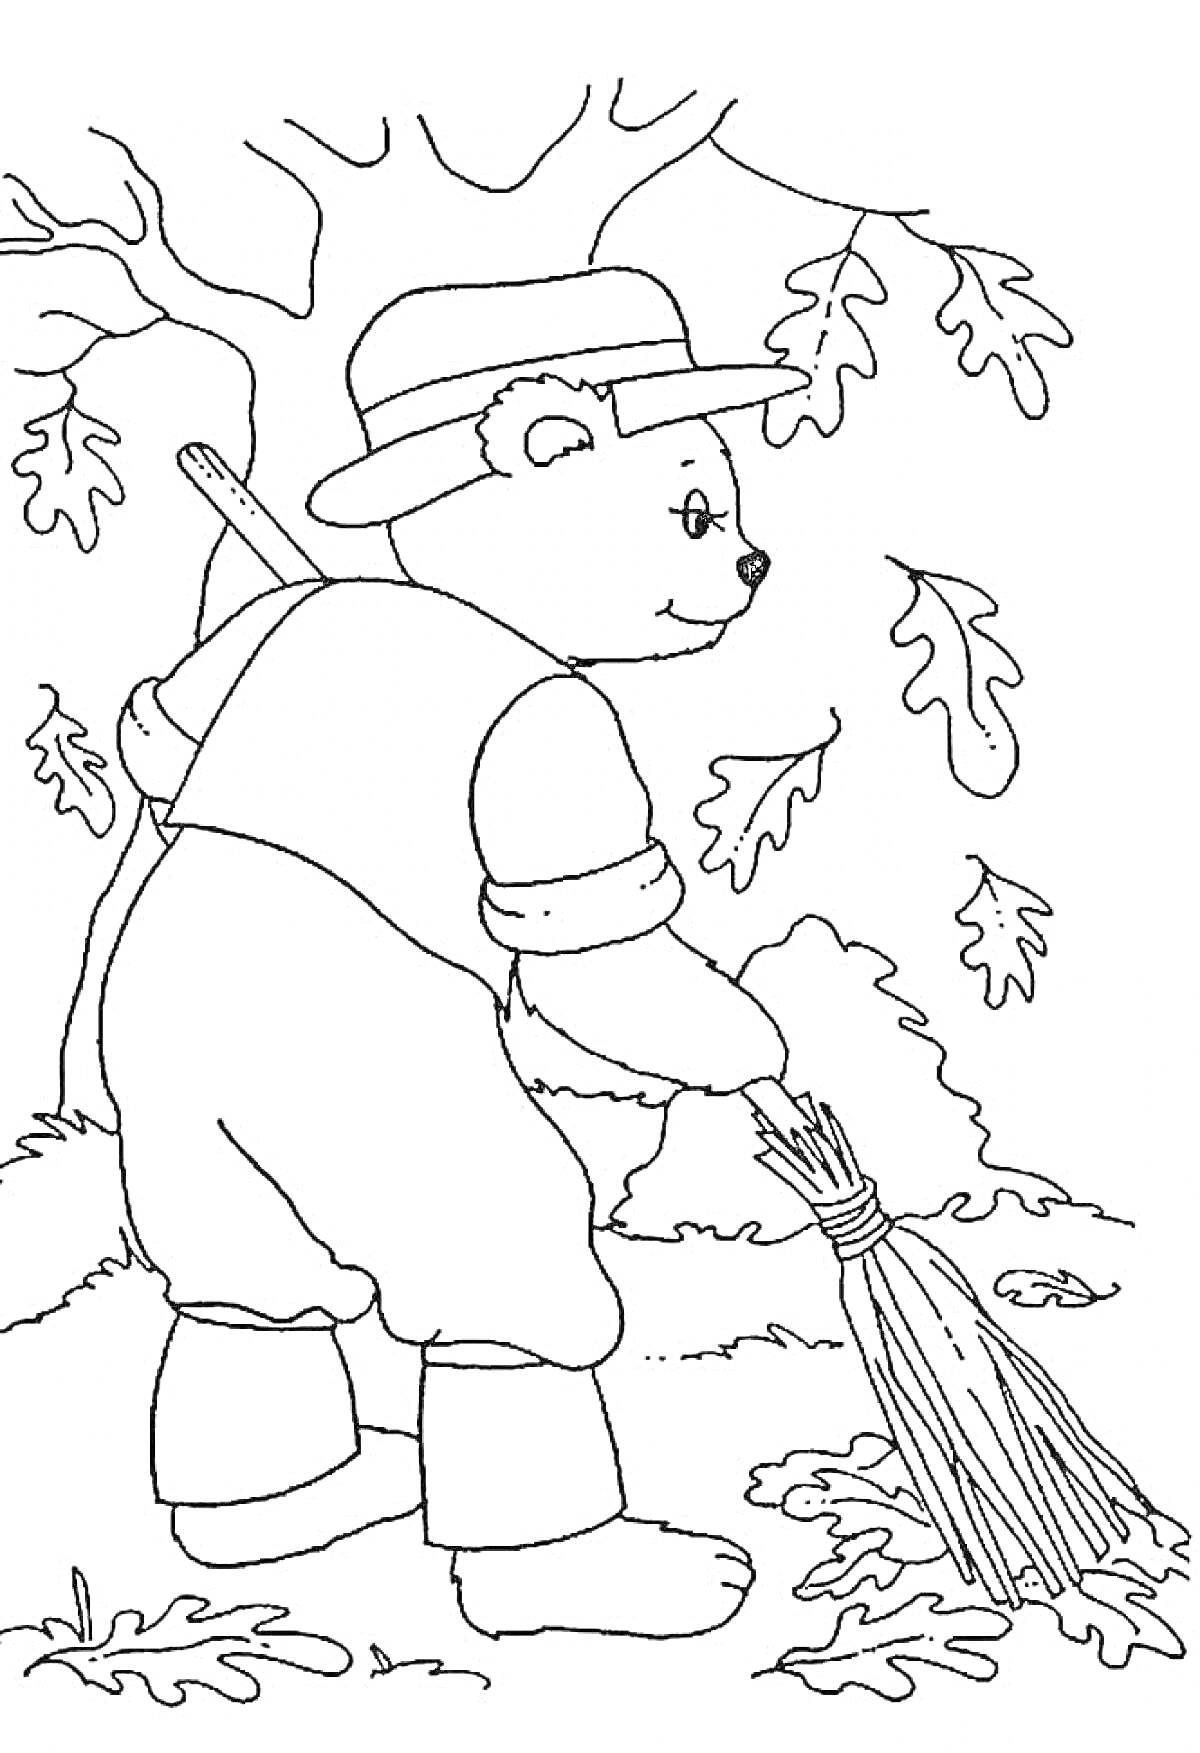 Медвежонок в шляпе убирает листву под деревом